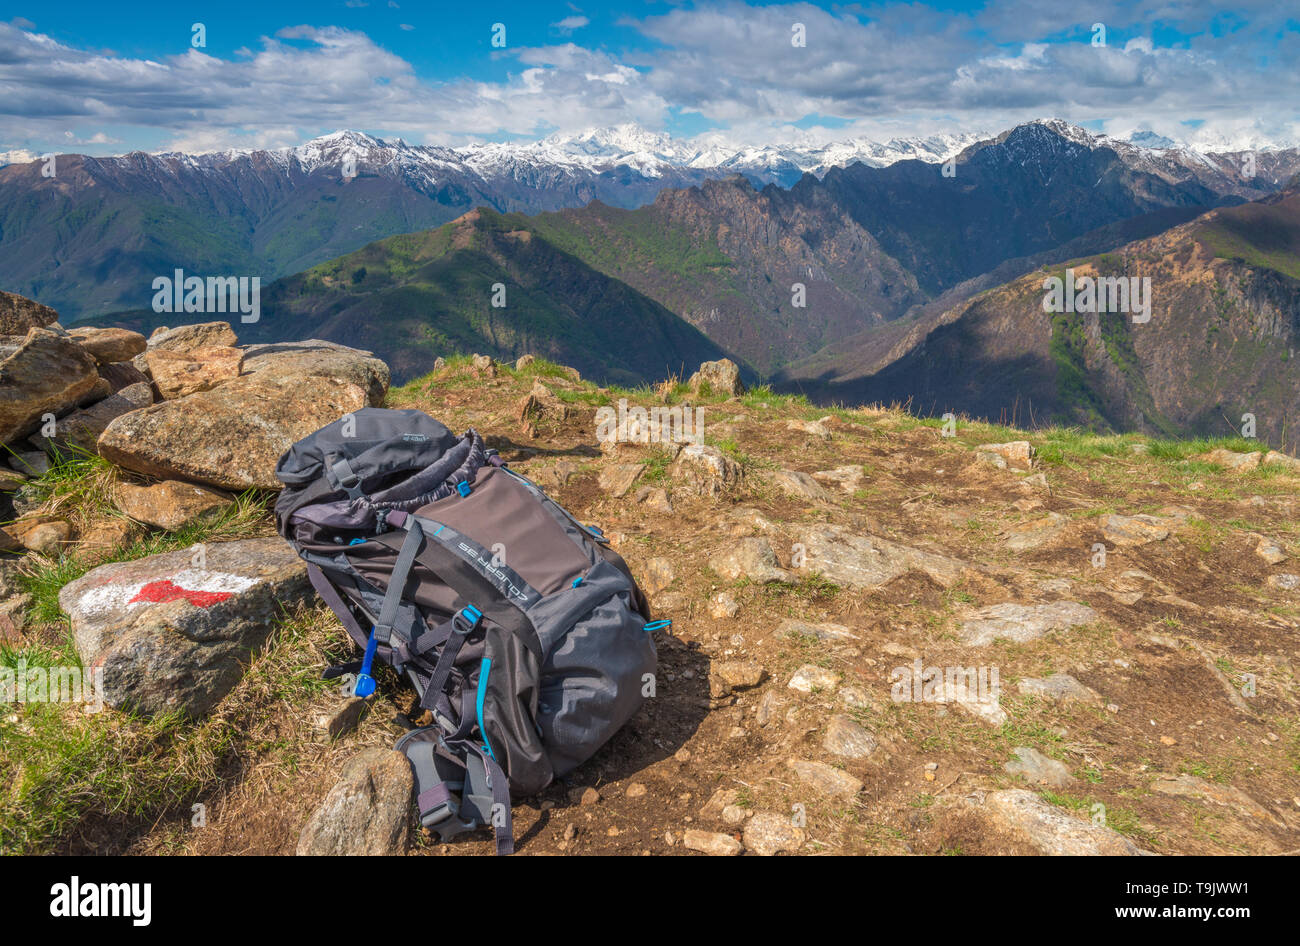 Vista del vertice di montagne dalle vette innevate, zaino, segnavia o modo marcatore, nel Nord Italia Alpi del Piemonte, guardando il Monte Rosa. Foto Stock